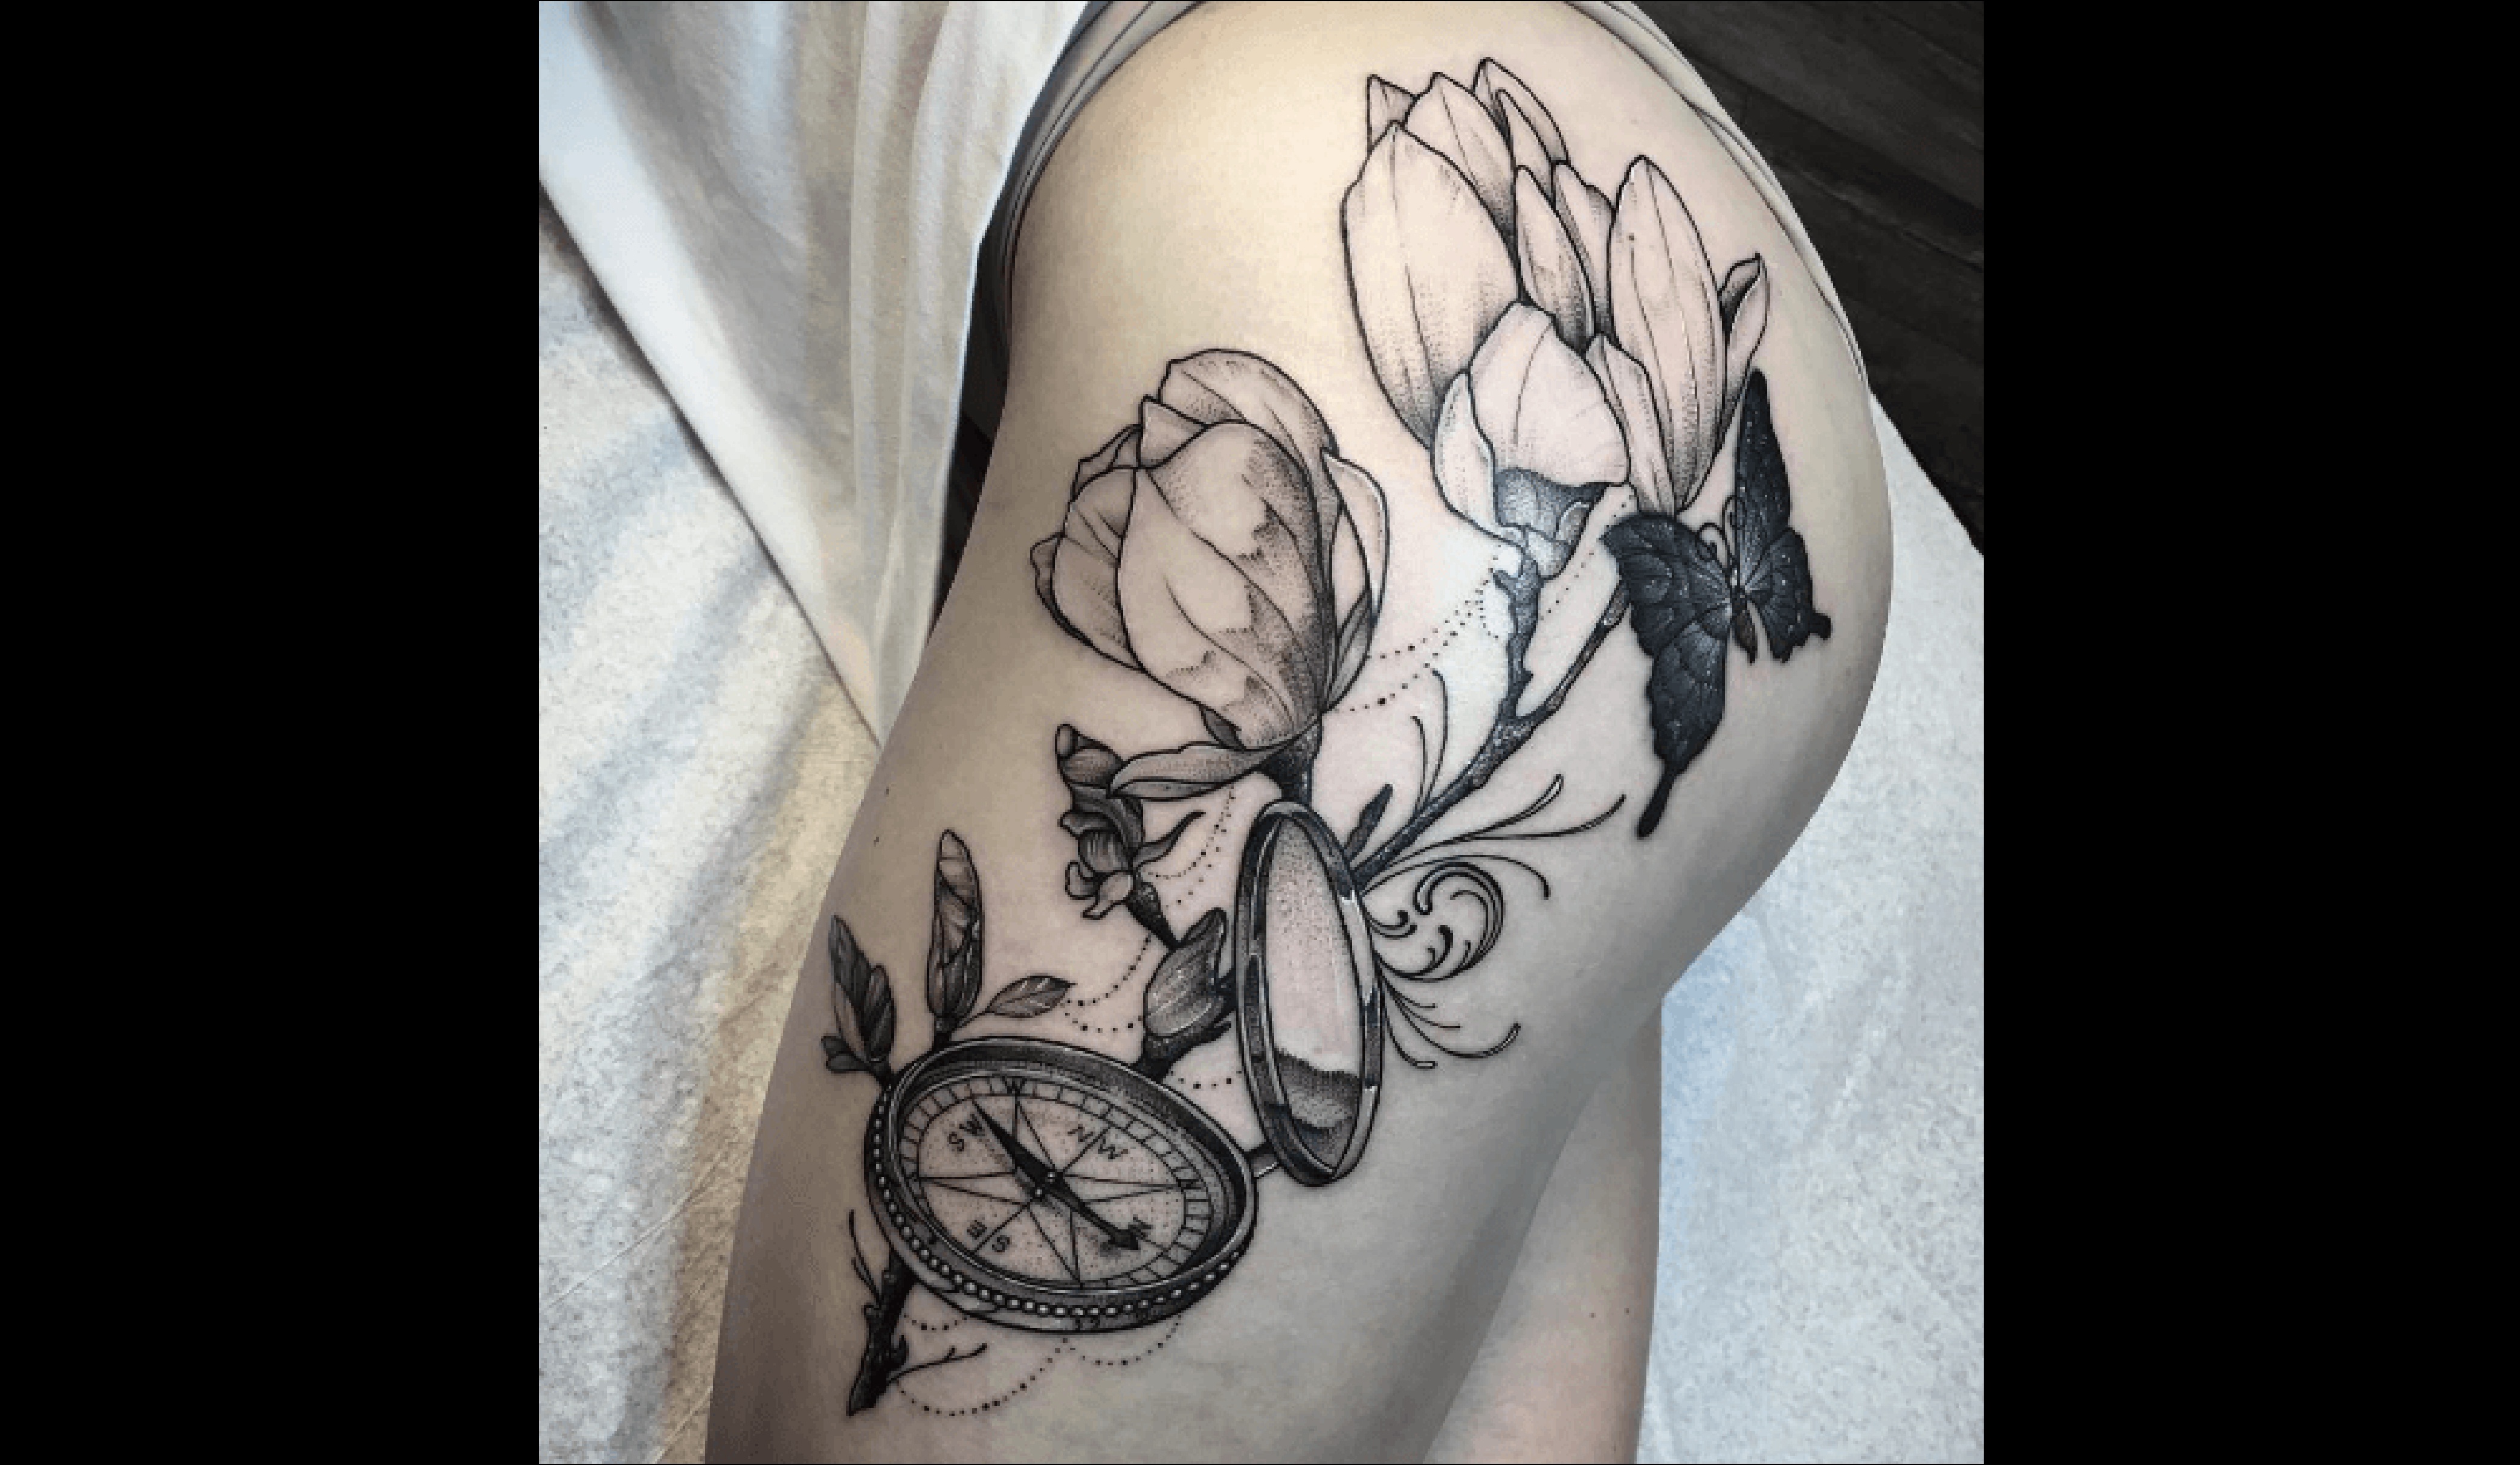 Artiste inconnu, une boussole tatouée sur le haut de la jambe